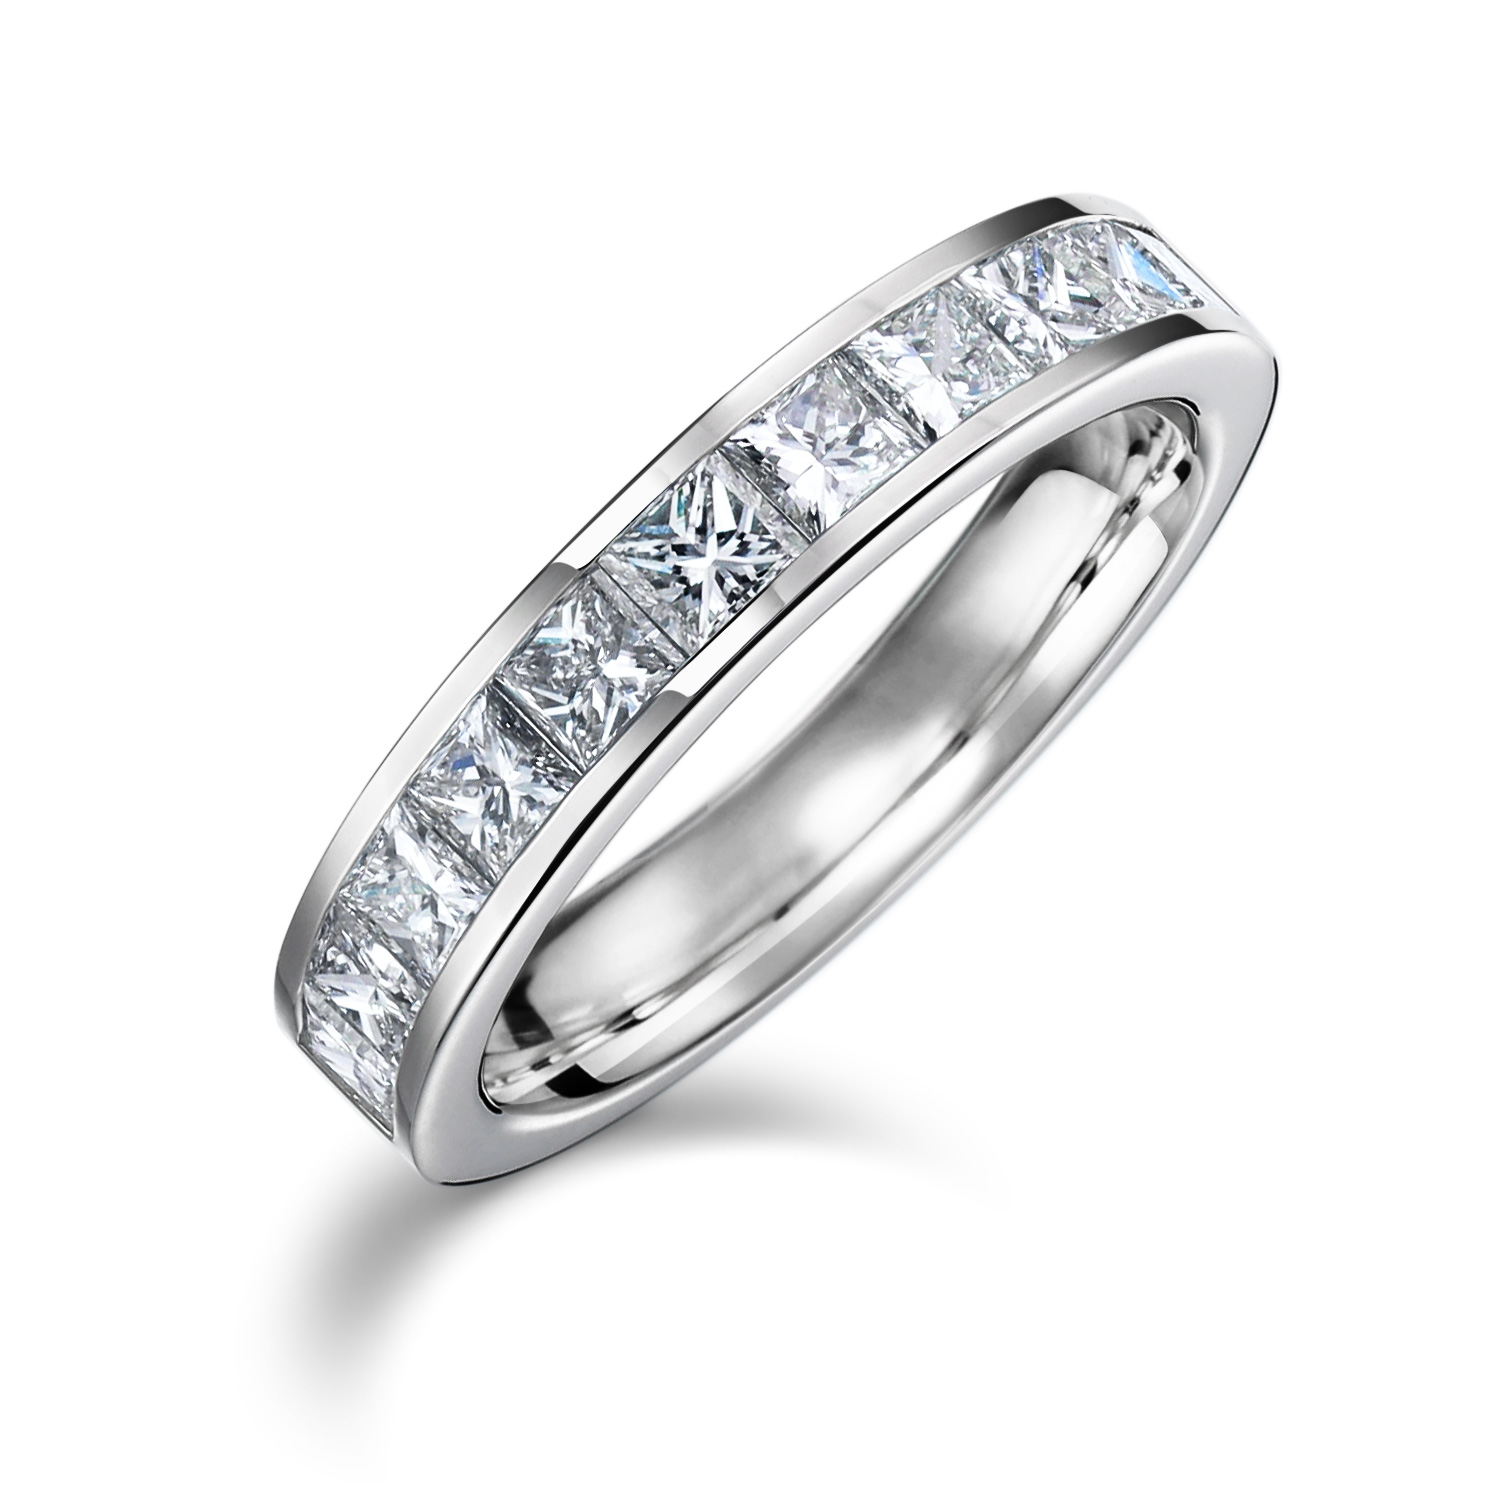 豪華な結婚指輪として 0 97カラット 2 5ミリのプリンセスカットを使ったエタニティリングです オーダーメイド通販 山梨 甲府のジュエリーブランドizuru